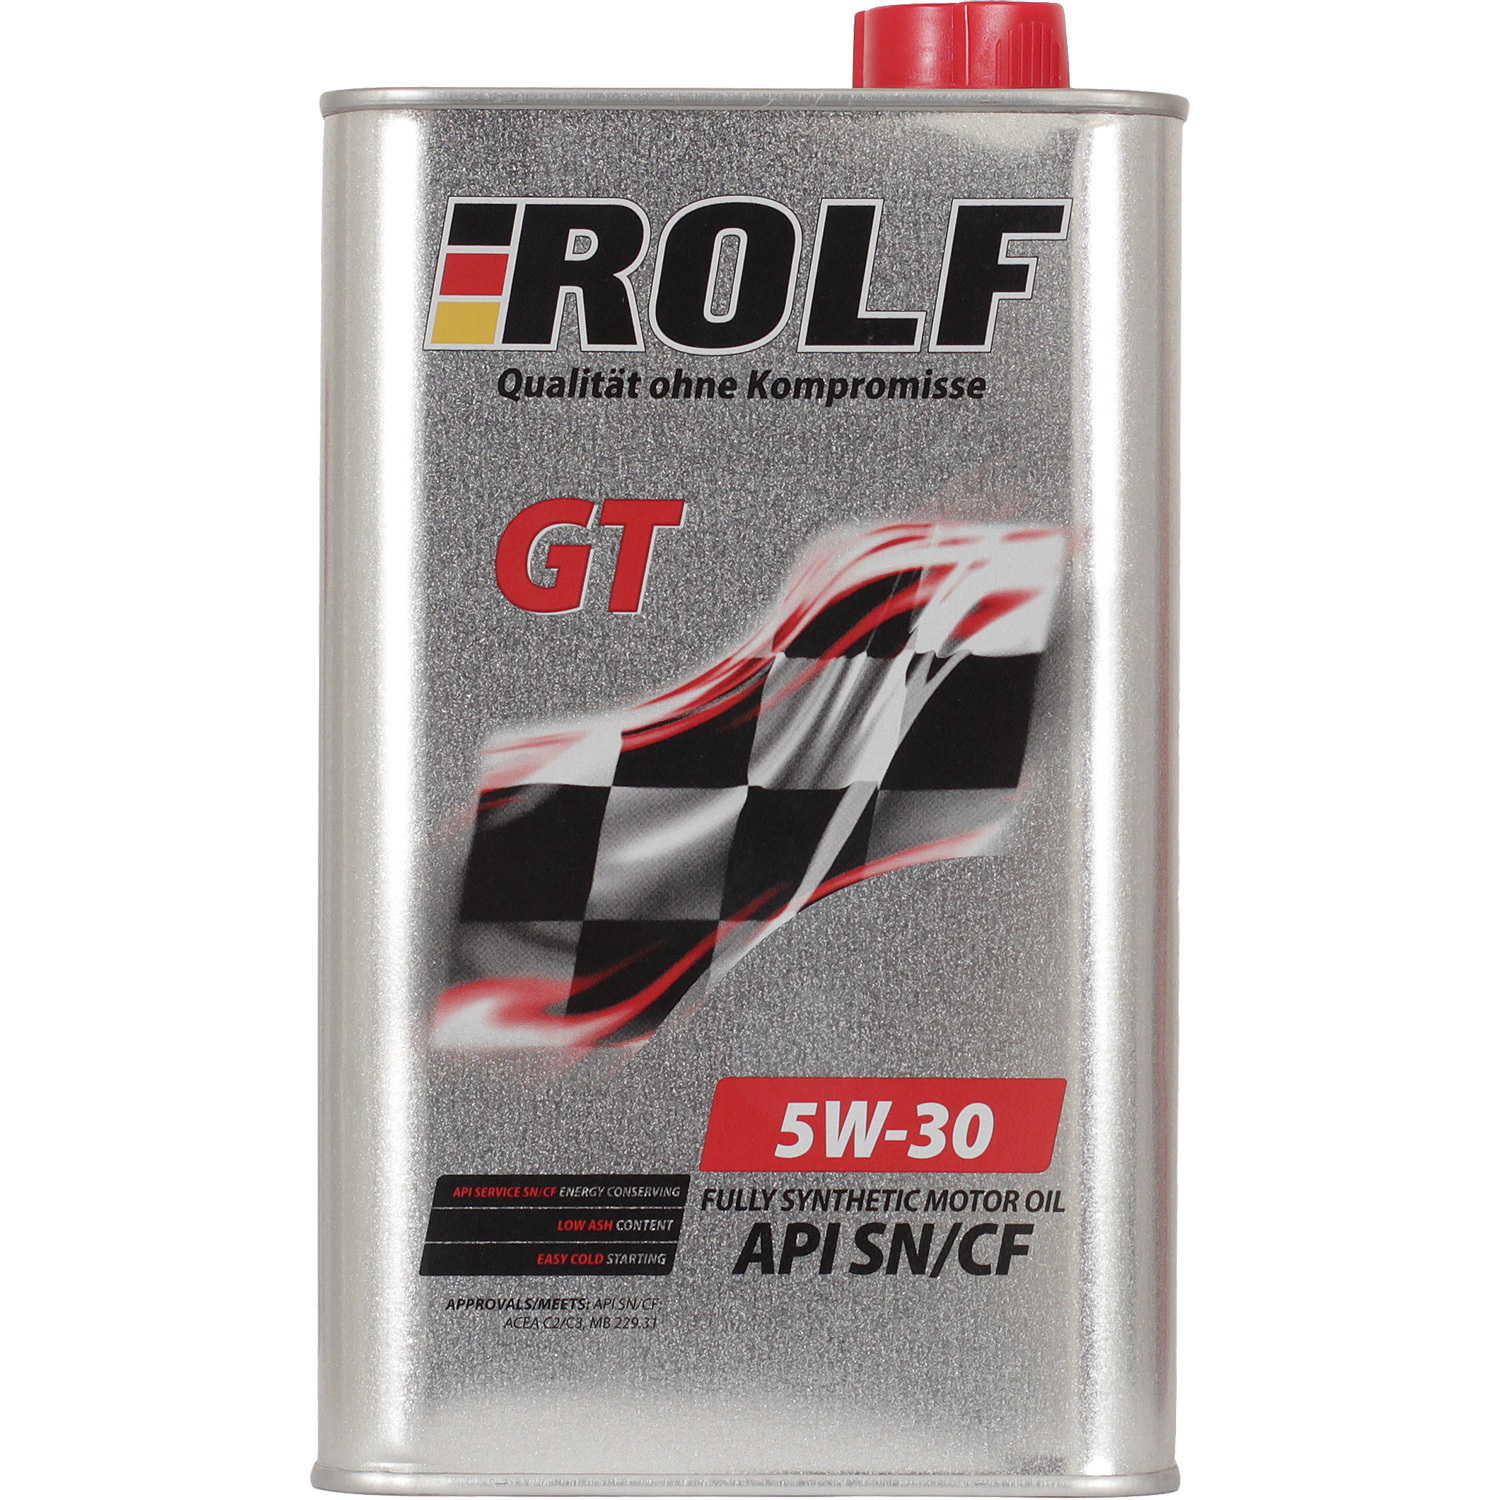 Rolf Моторное масло Rolf GT 5W-30, 1 л масло моторное titan supersyn 5w 30 1 л cинтетическое